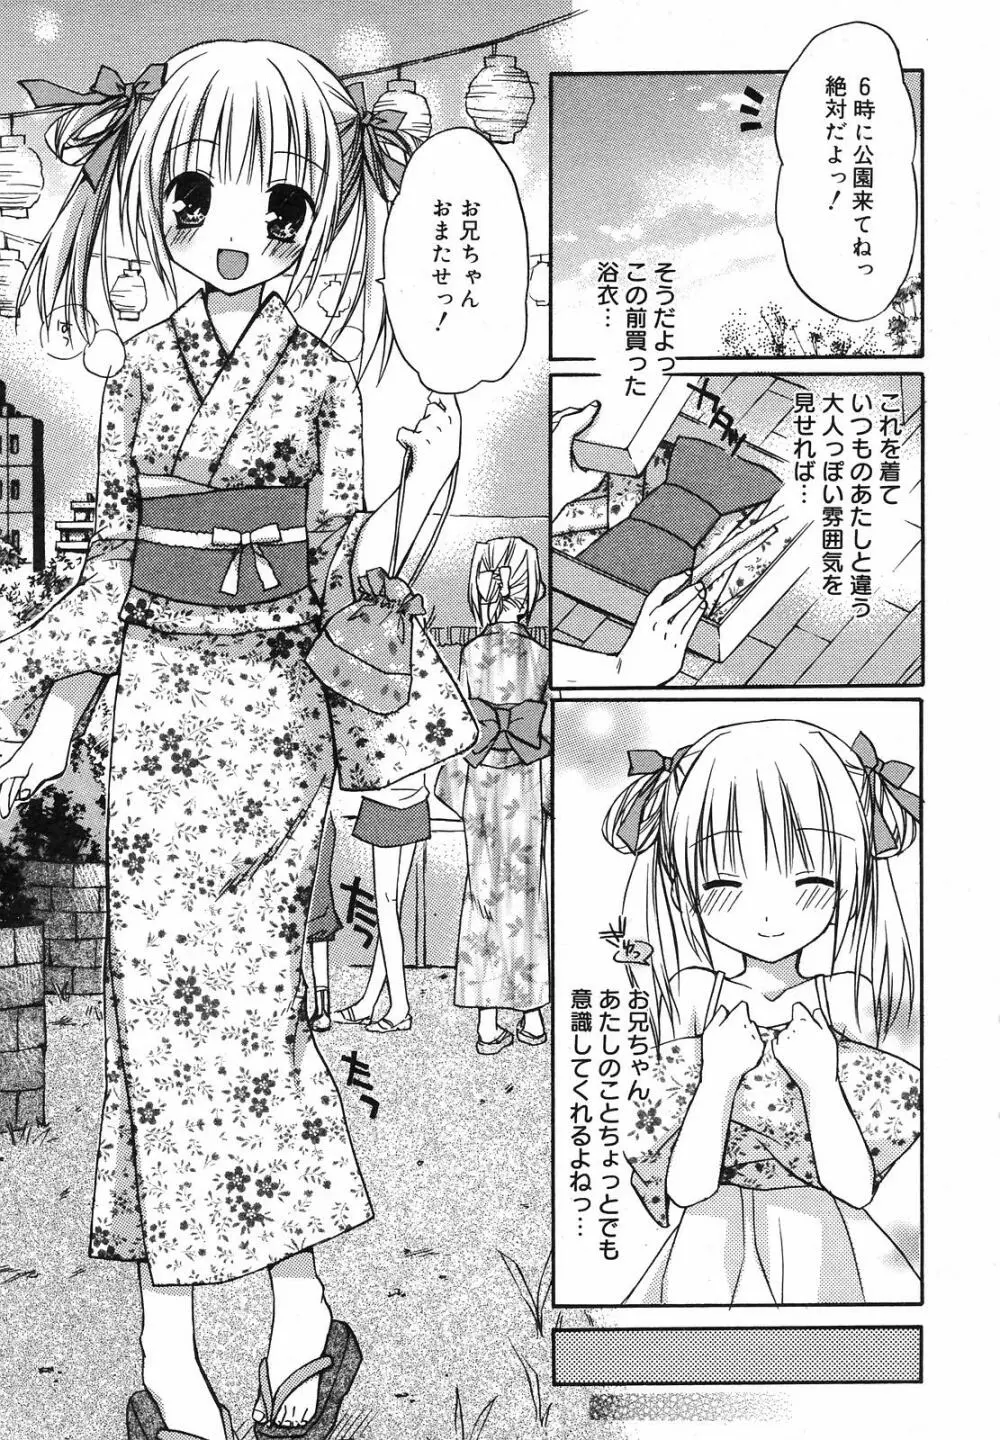 Manga Bangaichi 2008-09 43ページ